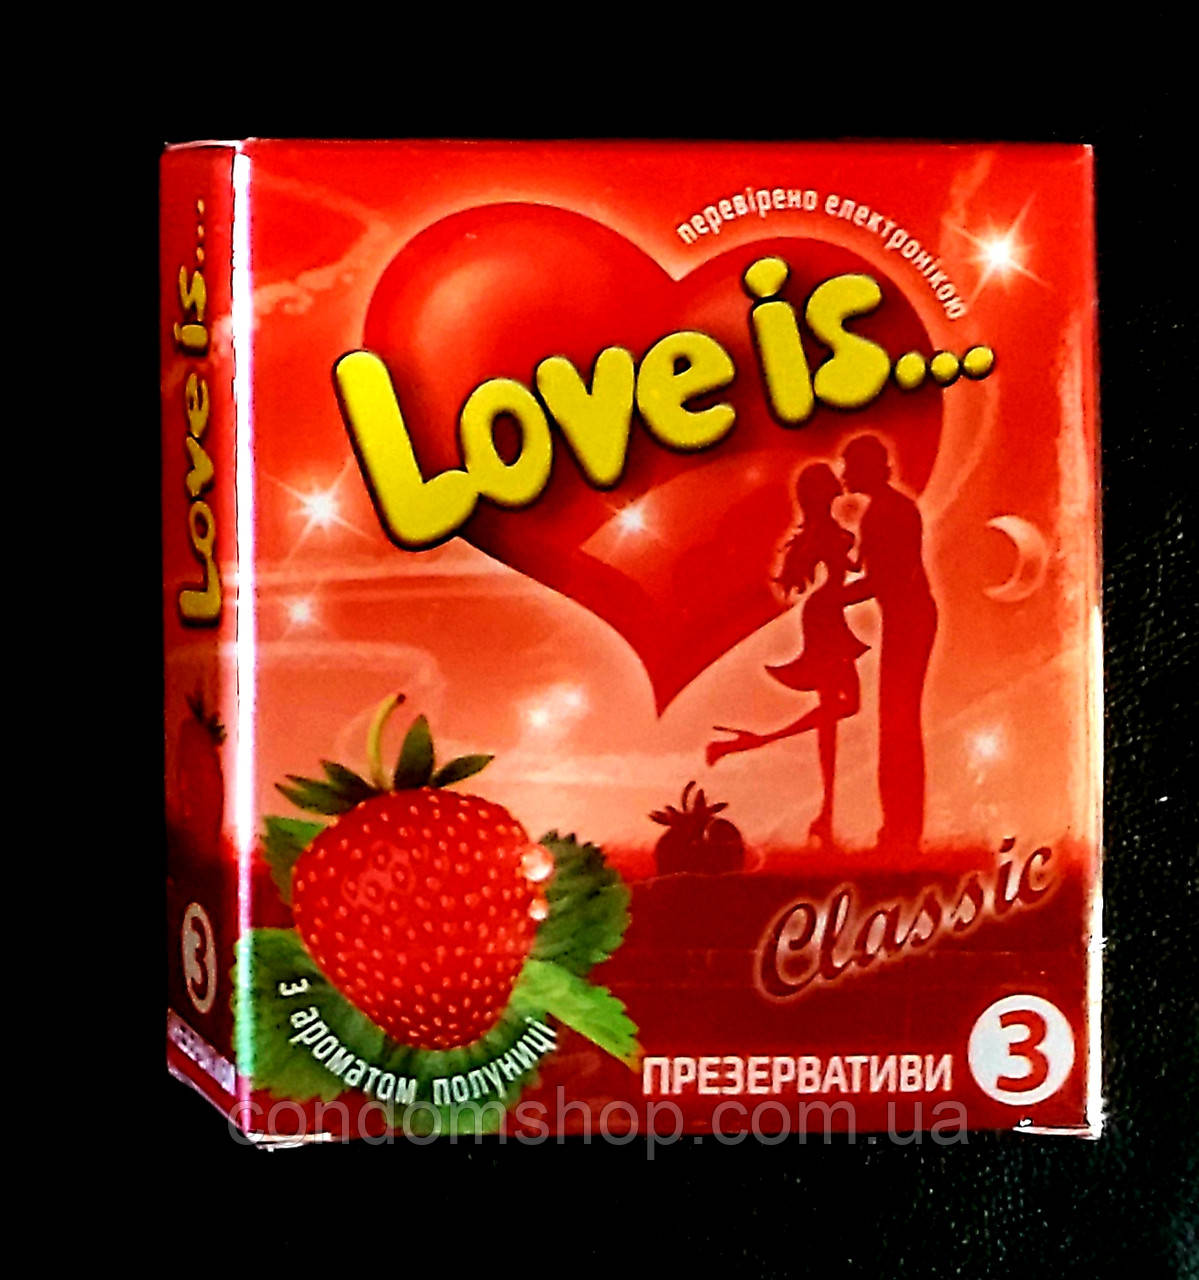 Презервативи LOVE IS преміум із КЛУБНИКОЮ й коміксом-вкладкою, 3 шт. Великобританії.